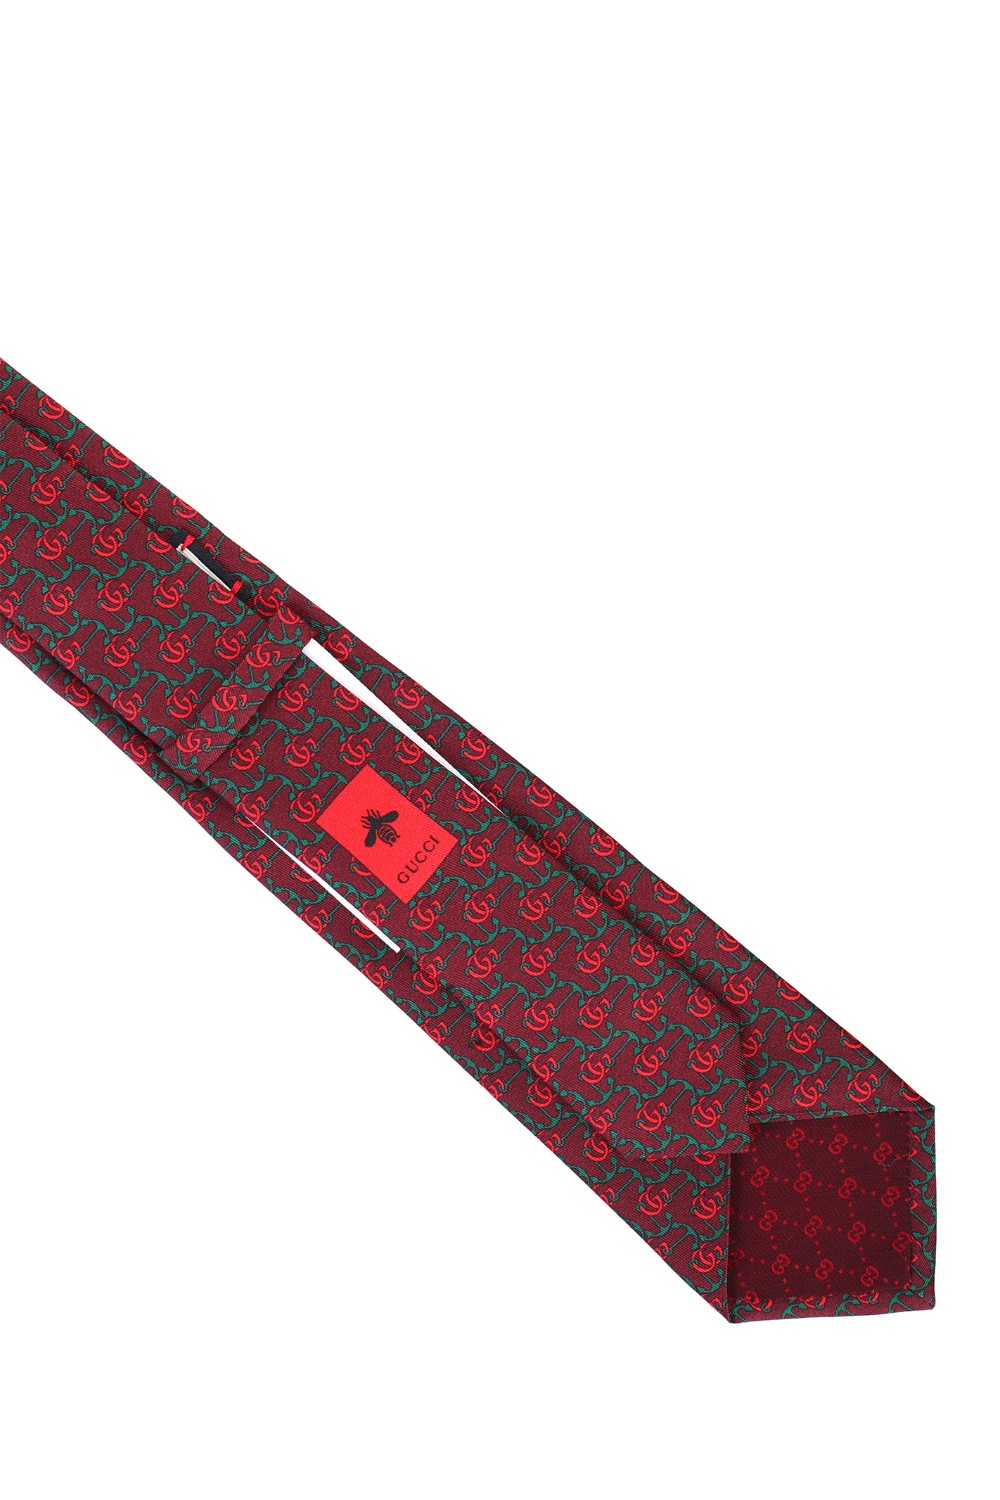 shop GUCCI Saldi Cravatta: Gucci cravatta in seta rossa con stampa ancore e Doppia G verde e rossa.
Dimensioni: L 7 cm x A 146 cm.
Composizione: 100% seta.
Made in Italy.. 597234 4E001-6066VINACCIA number 7351957